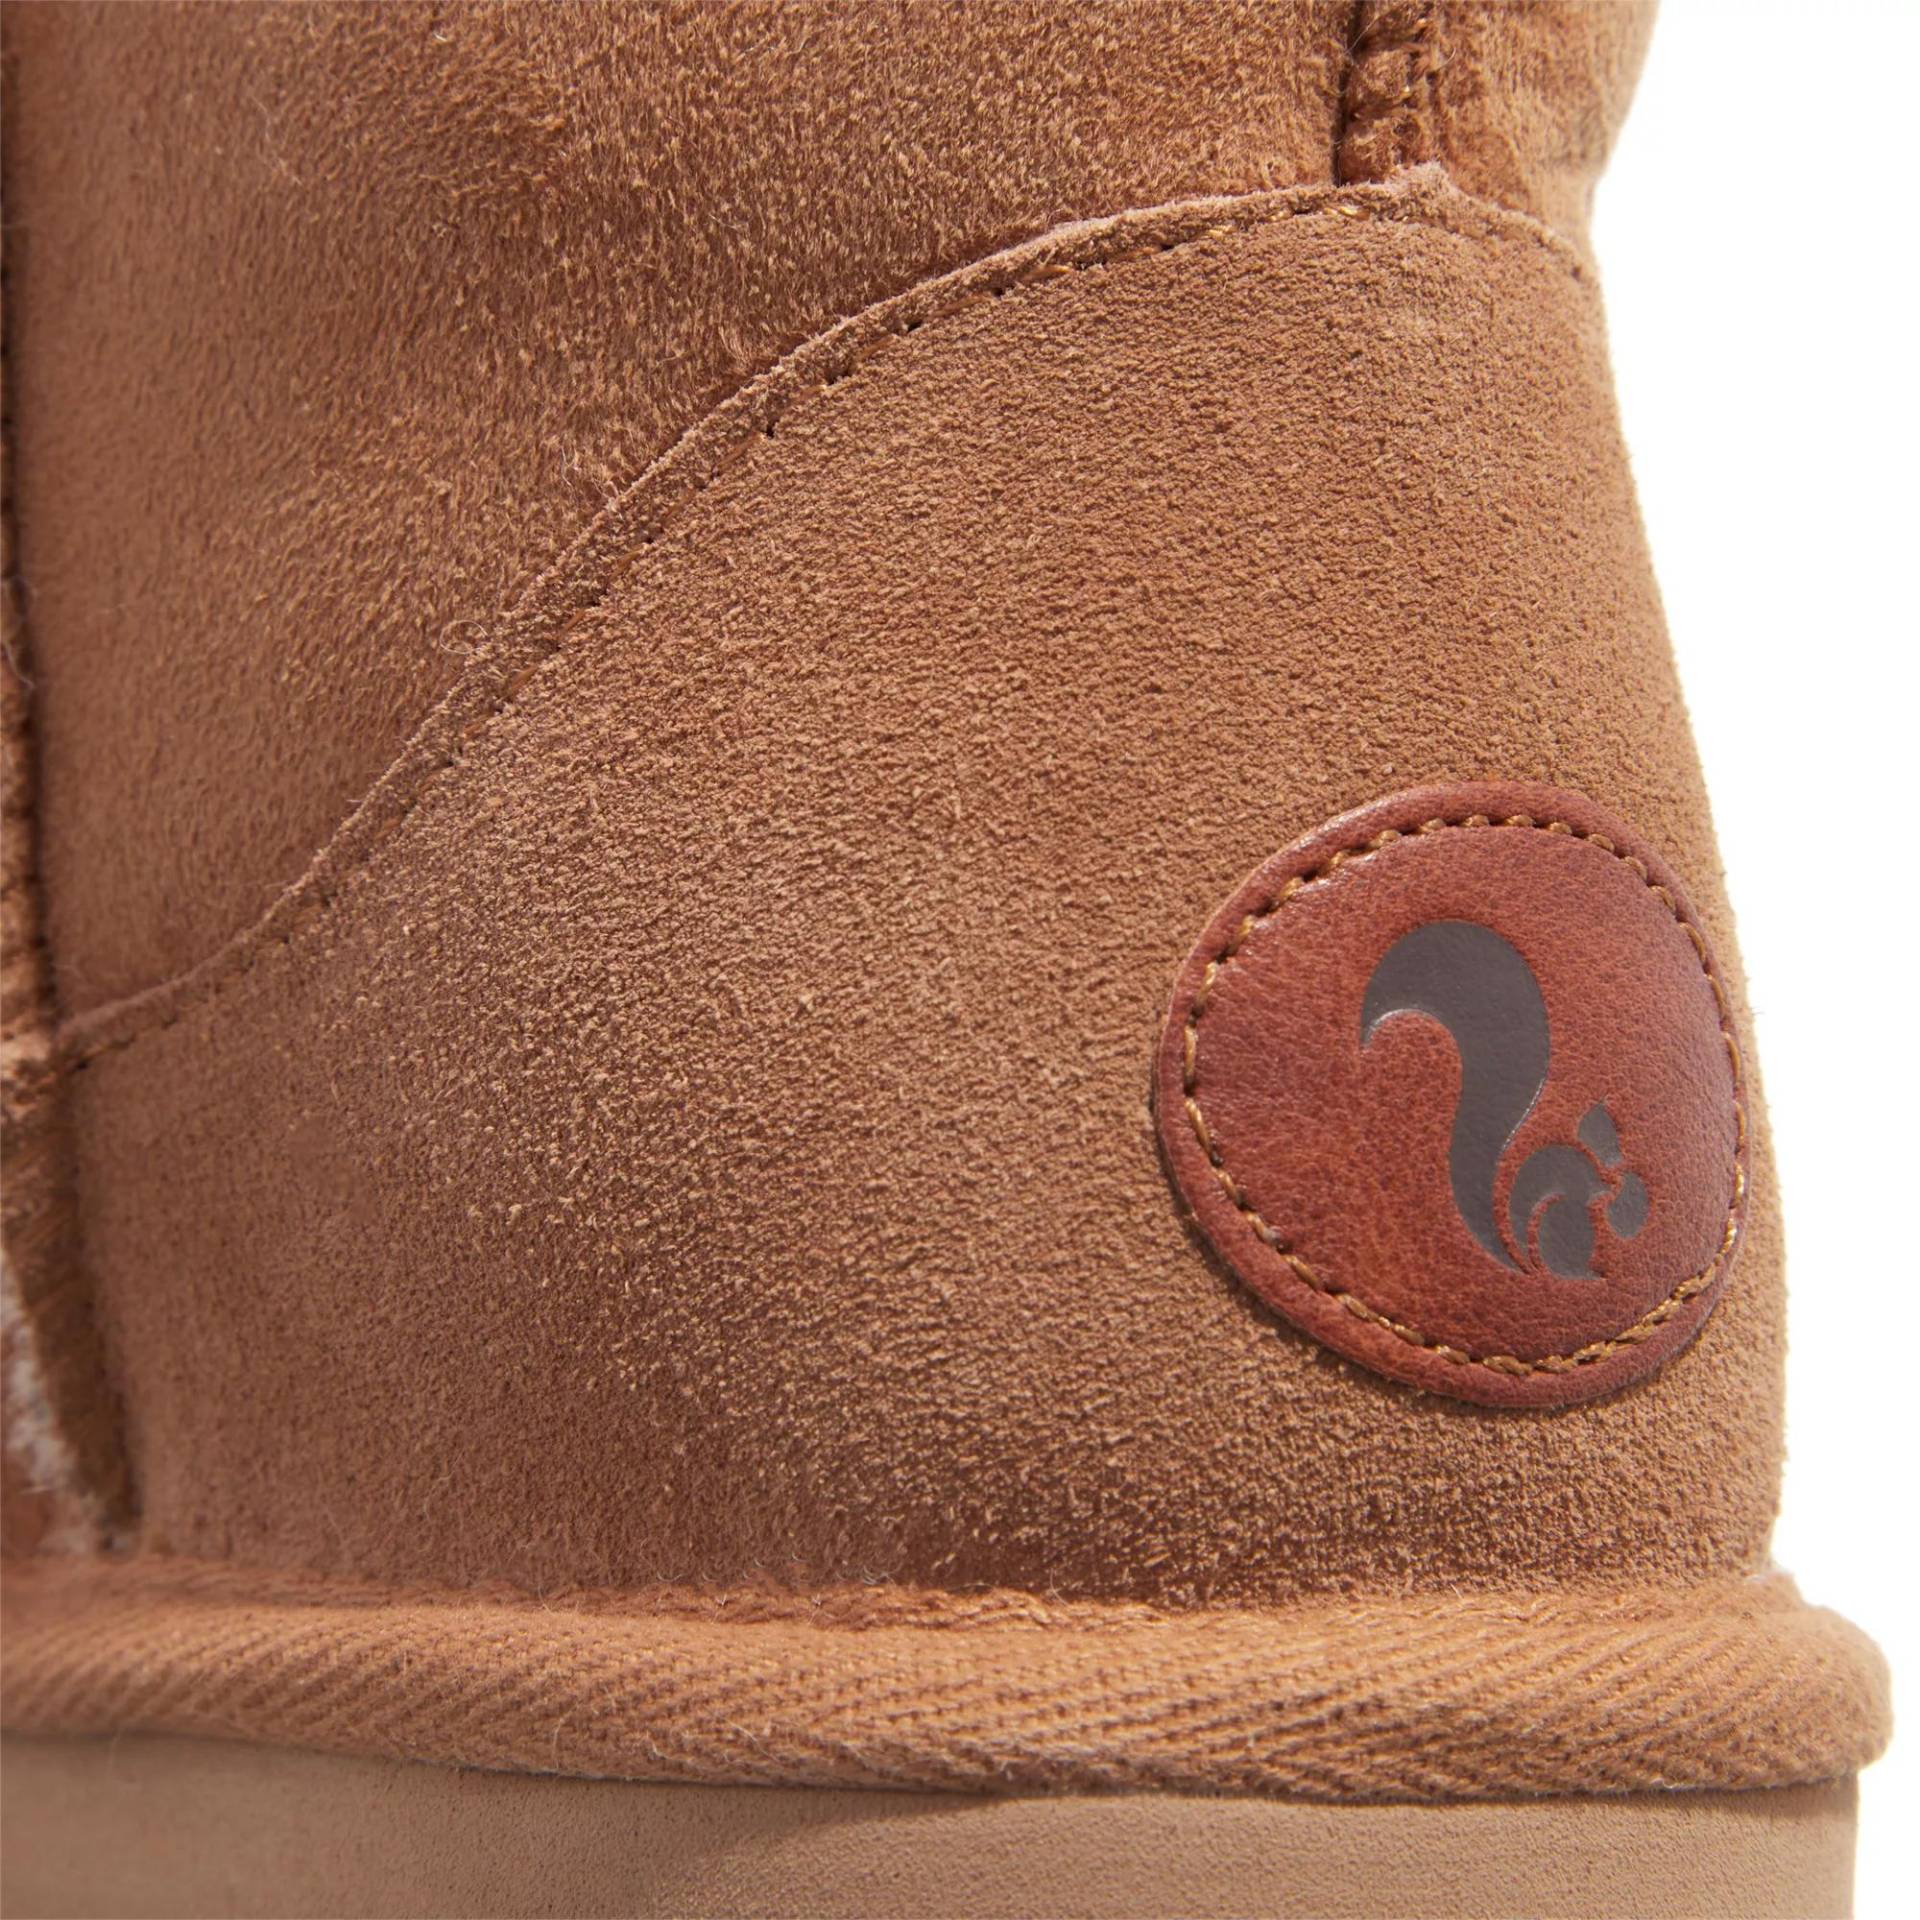 thies Sneakers - thies 1856 ® Classic Sheepskin boot cashew (W) - Gr. 41 (EU) - in Braun - für Damen von thies